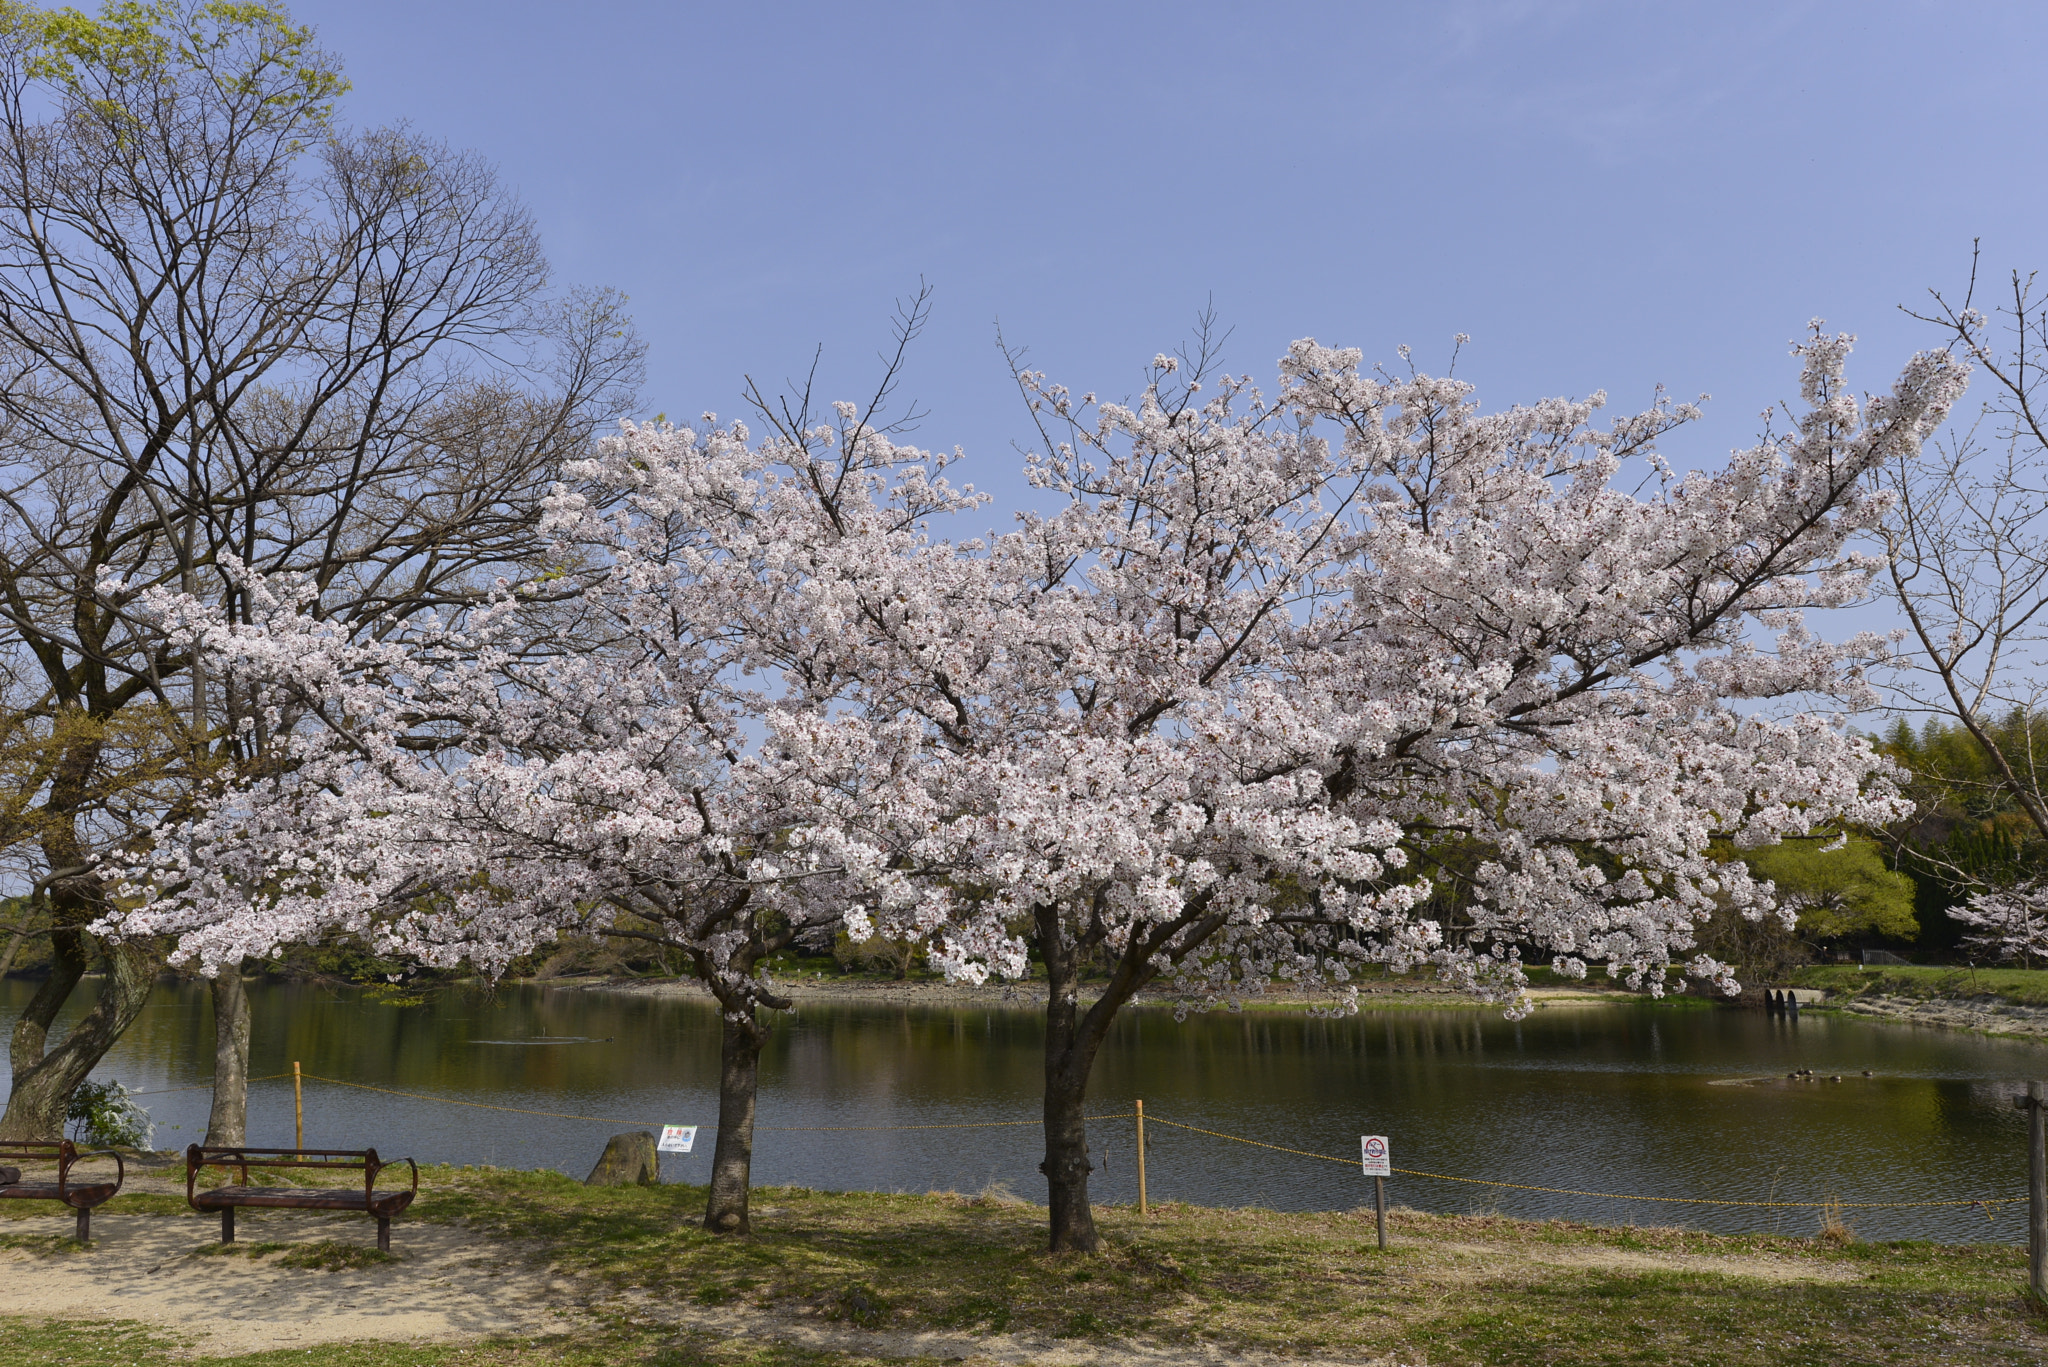 Nikon D610 + Nikon AF-S Nikkor 16-35mm F4G ED VR sample photo. Cherry blossom photography